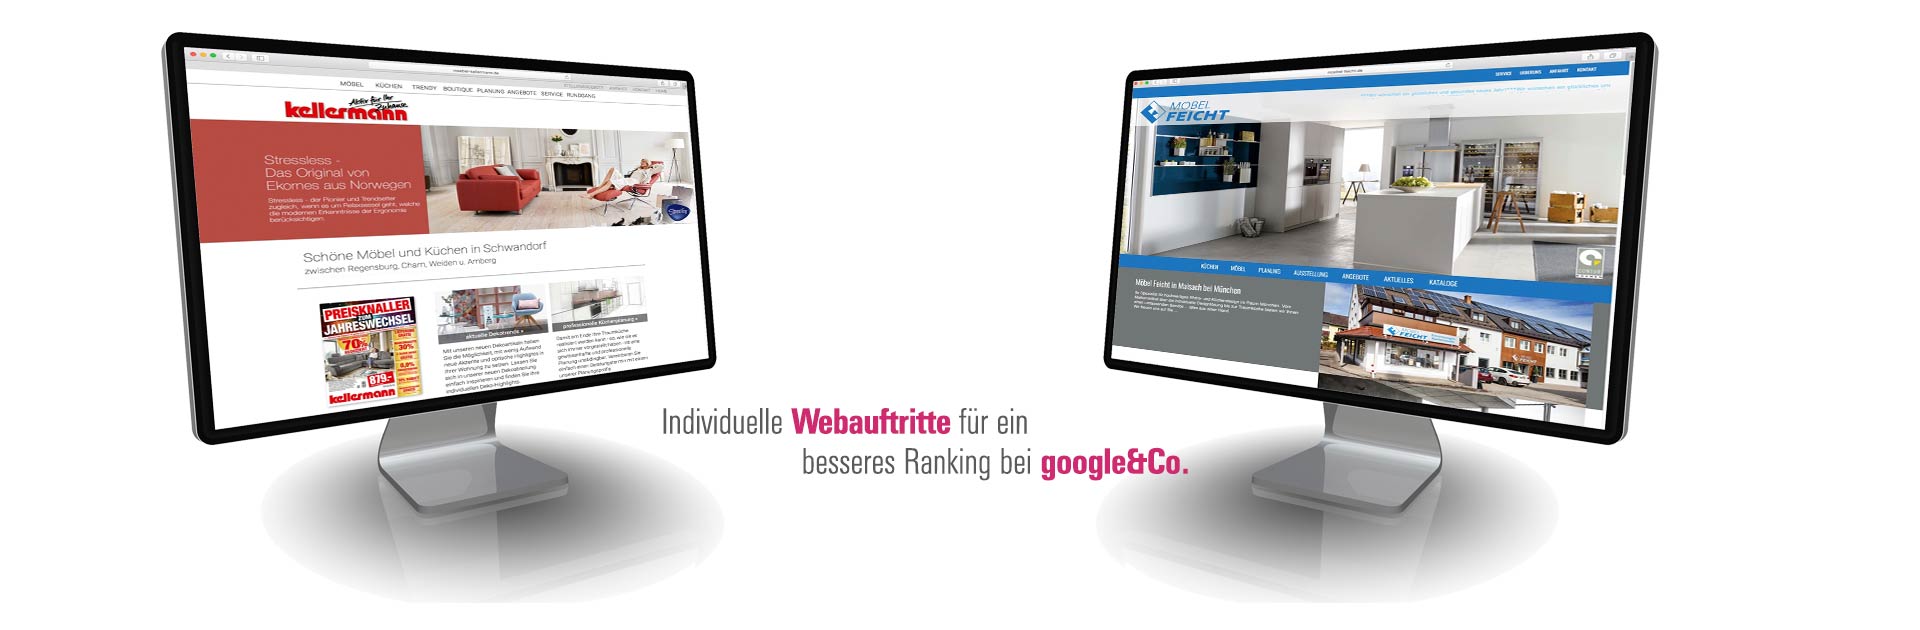 Romanek mediamodule SEO Coach Webdesign München SEO Beratung